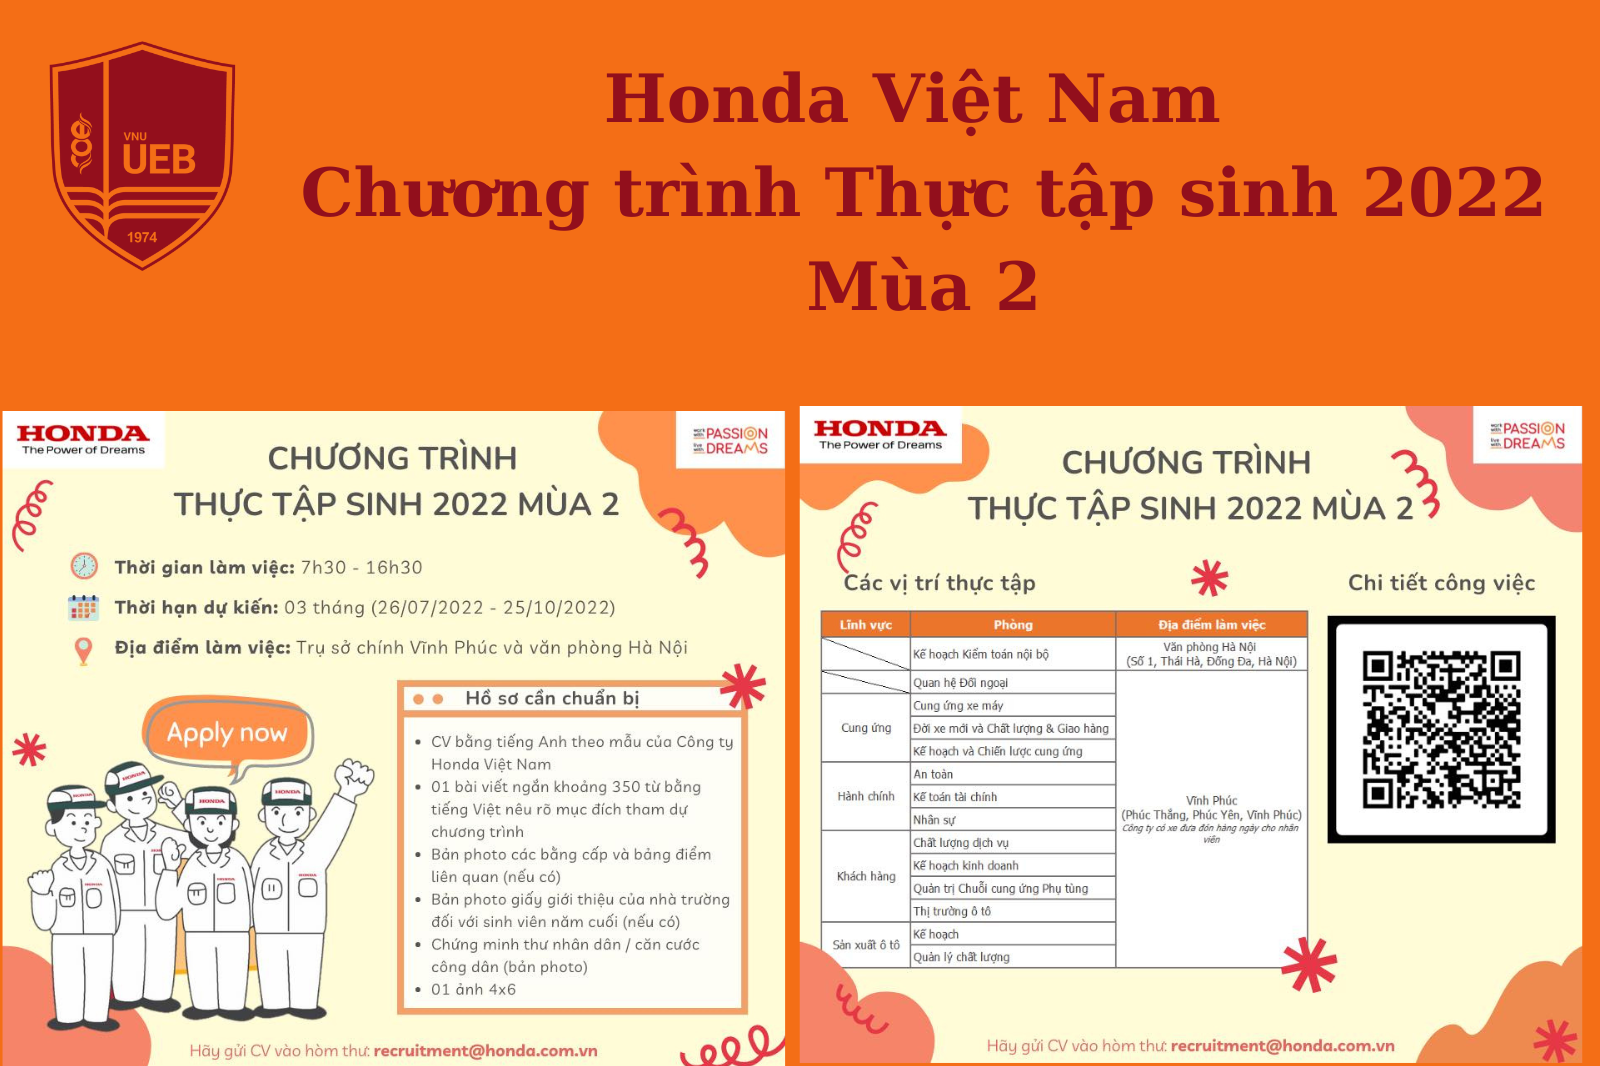 Honda Việt Nam - Chương trình Thực tập sinh 2022 mùa 2